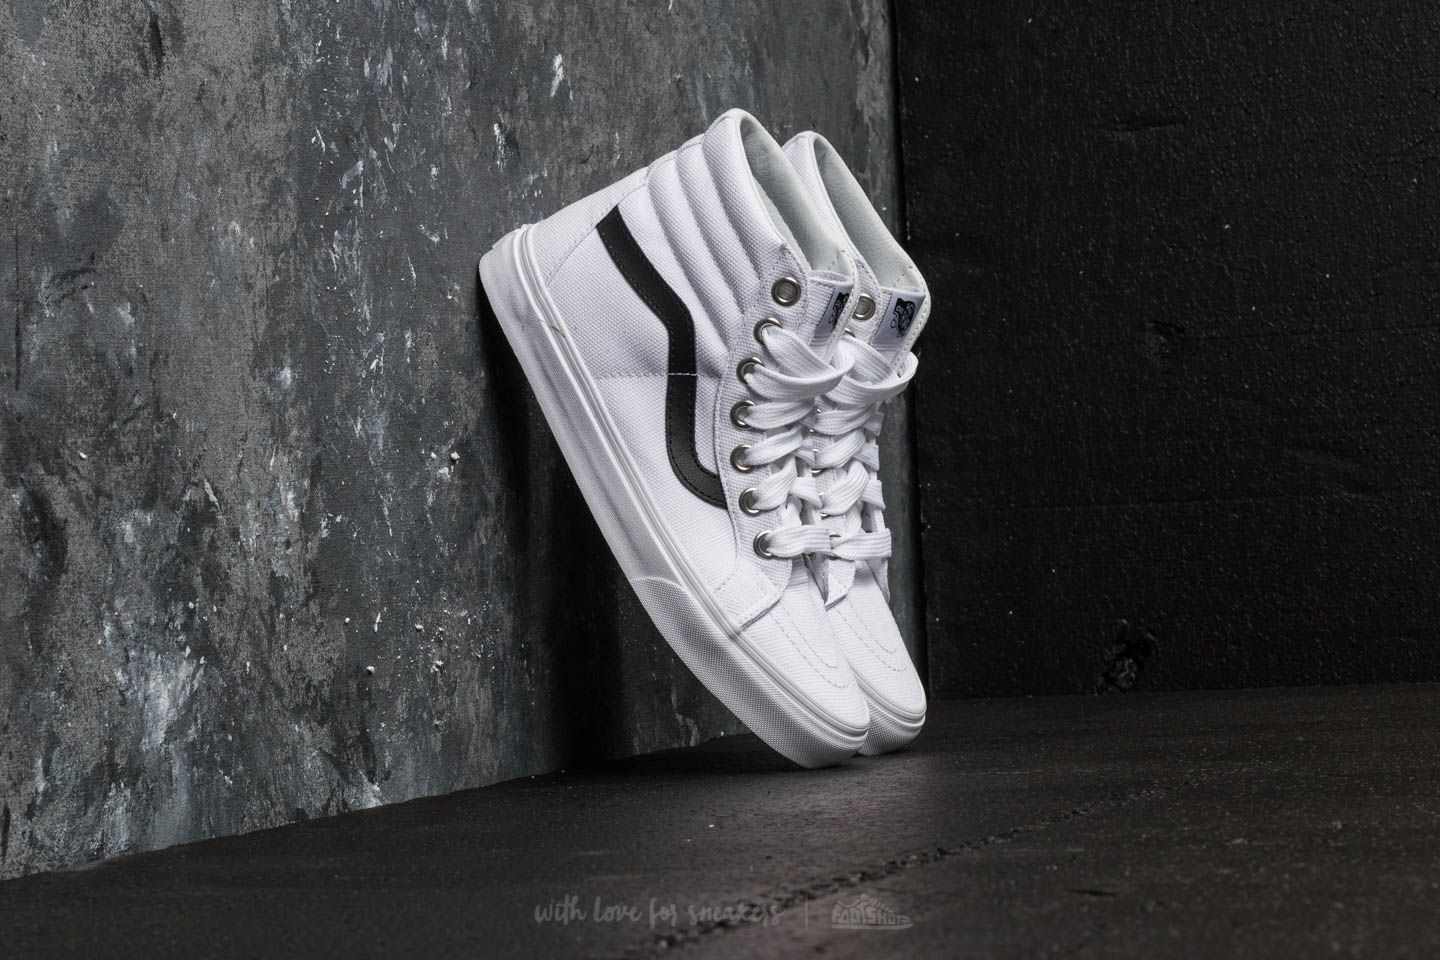 Men's shoes Vans Sk8-Hi Reissue (Oversized Lace) True White